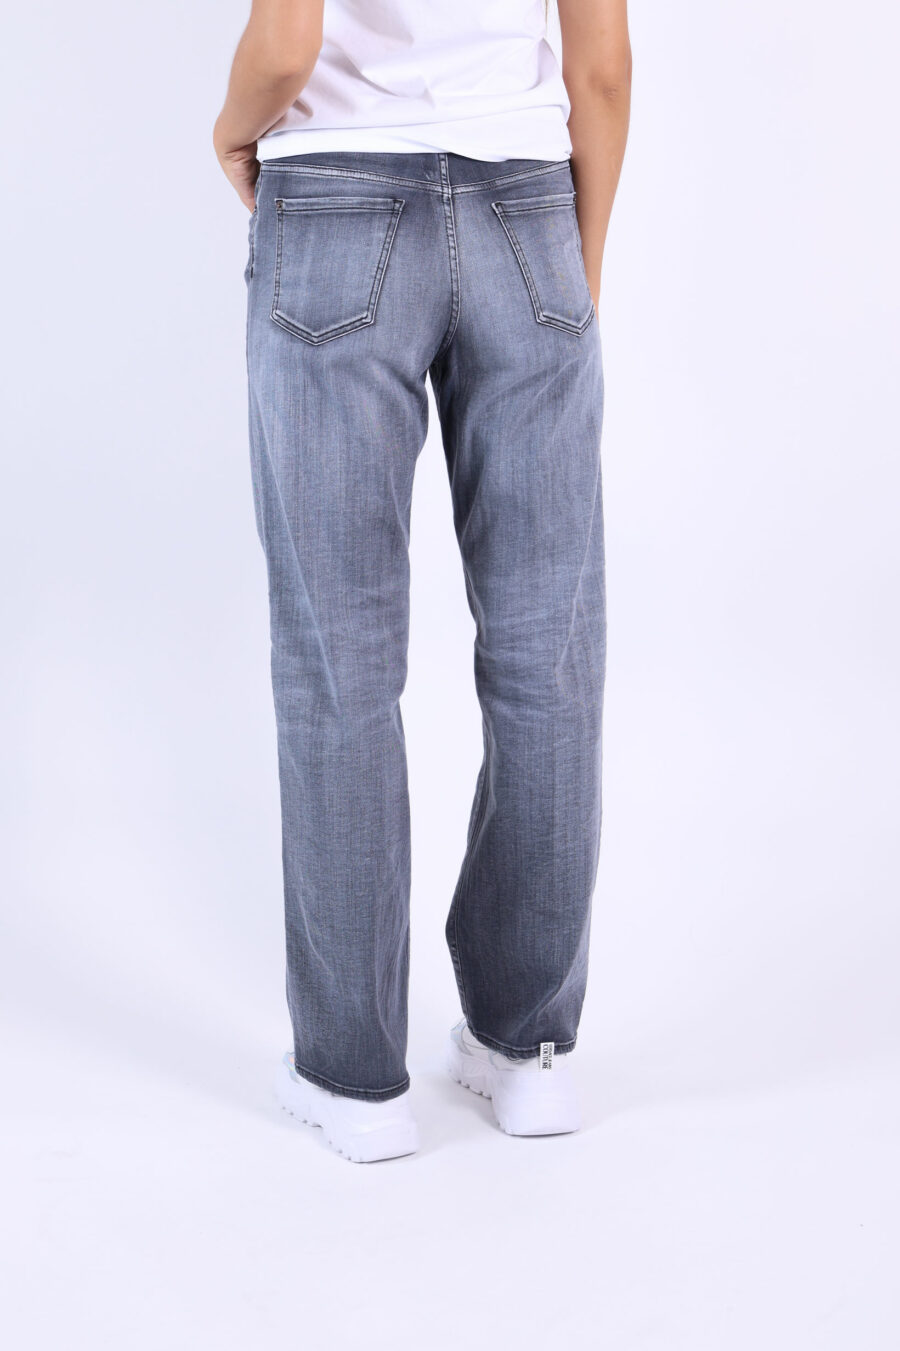 Jeans "San Diego jean" schwarz getragen - 361223054662201939 1